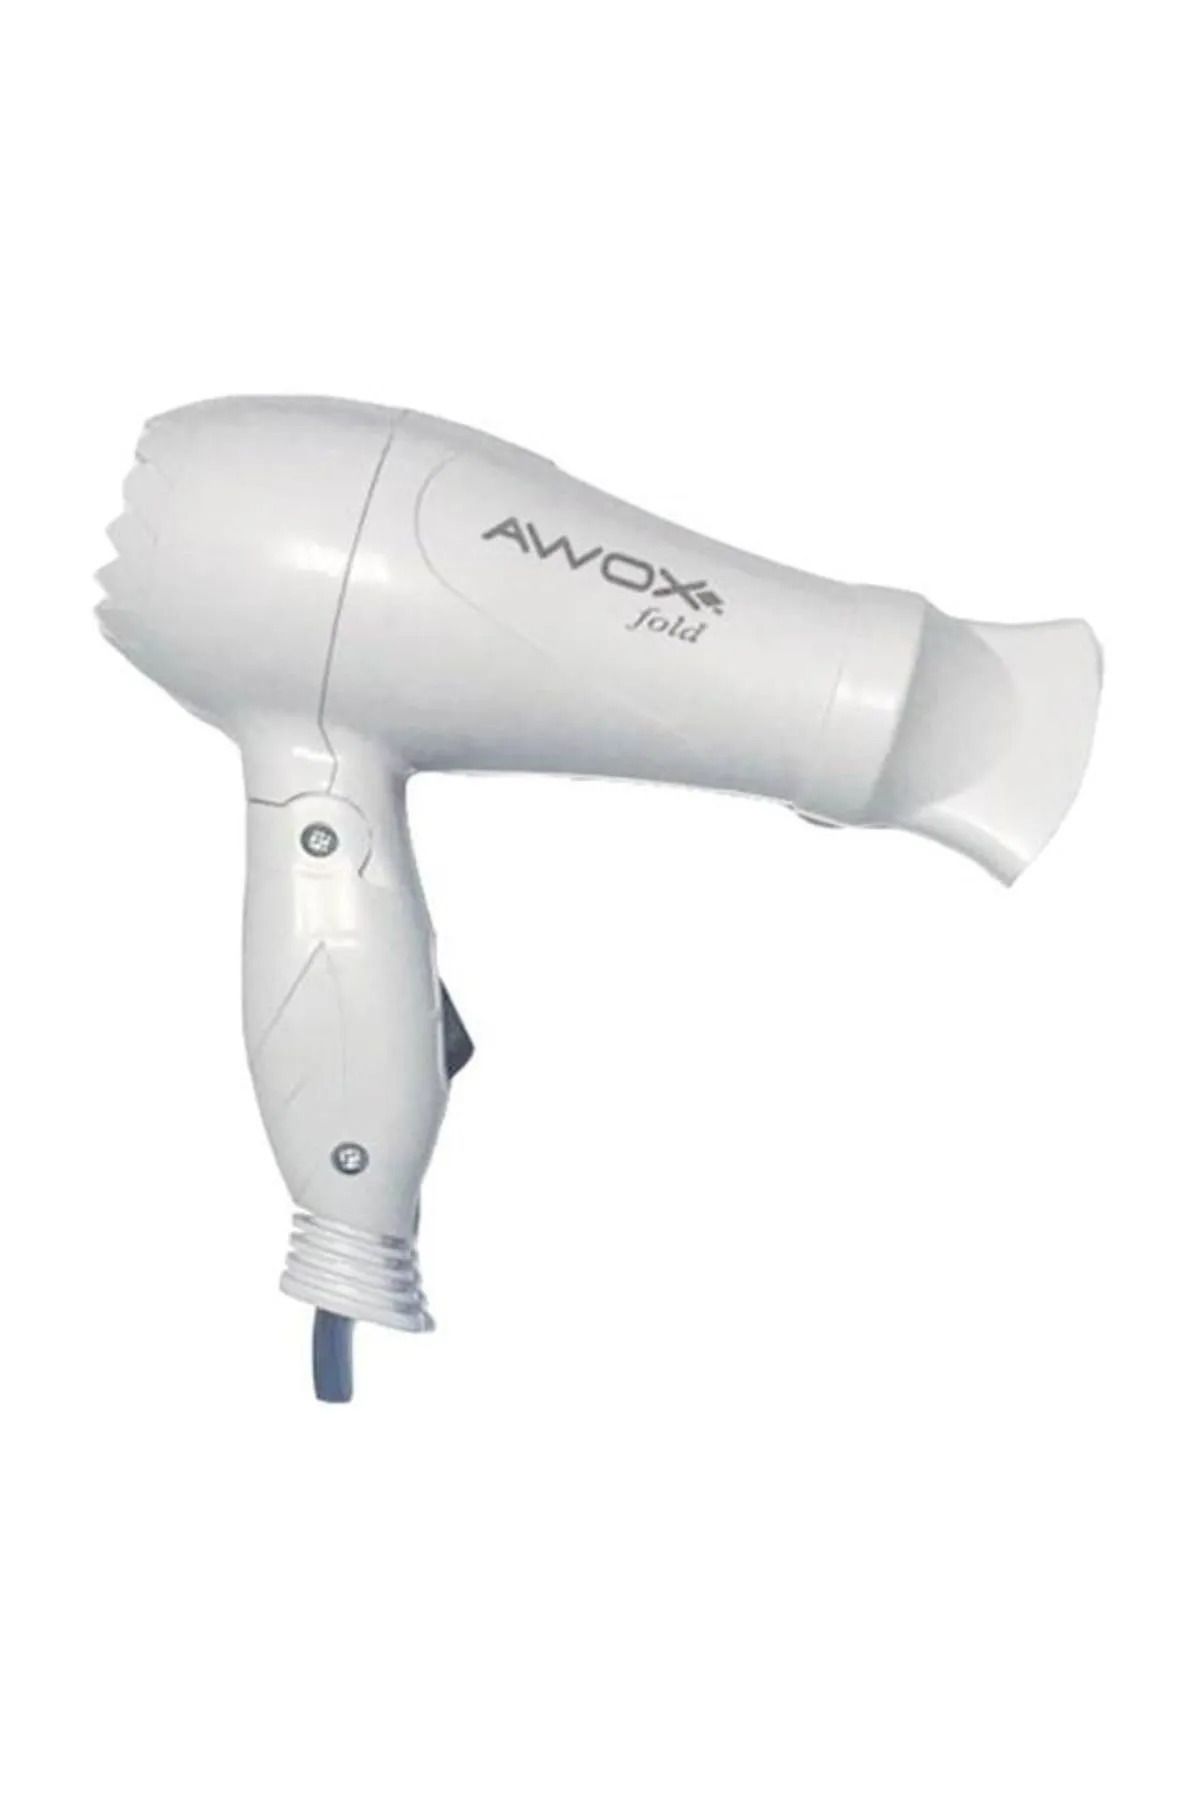 AWOX Fold Katlanabilir Saç Kurutma Makinesi Beyaz Awx-0061